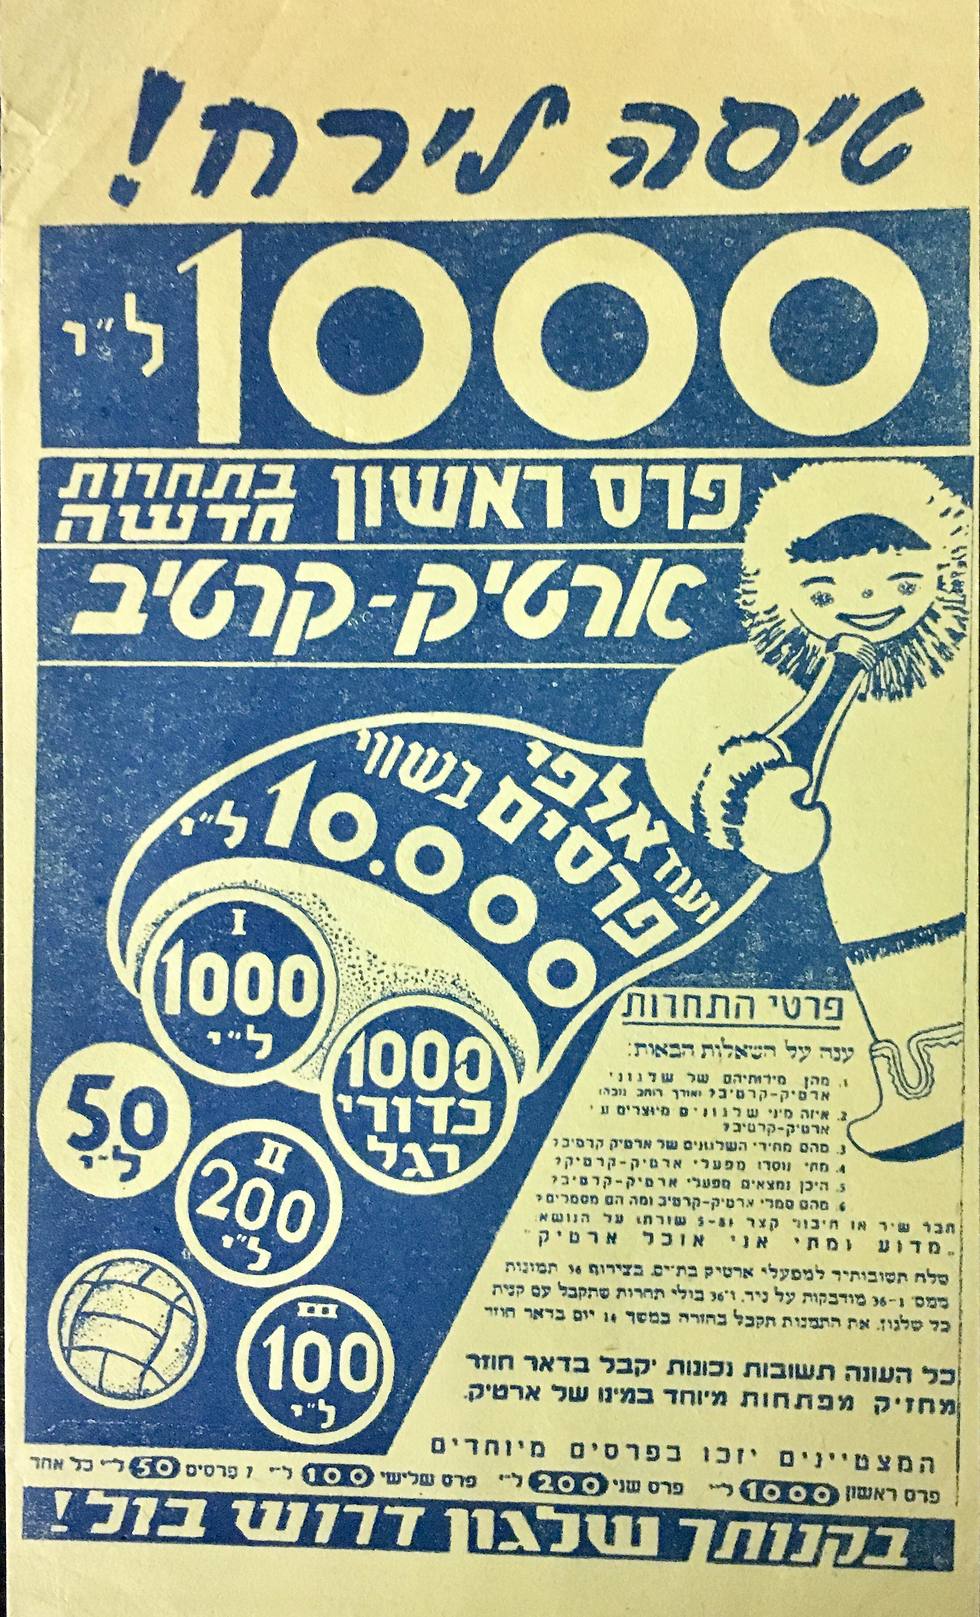 זיכרונות מהארטיק הראשון בישראל (אוסף ישראליאנה של הדי אור, פרויקט מסע בזמן, הספרייה הלאומית )